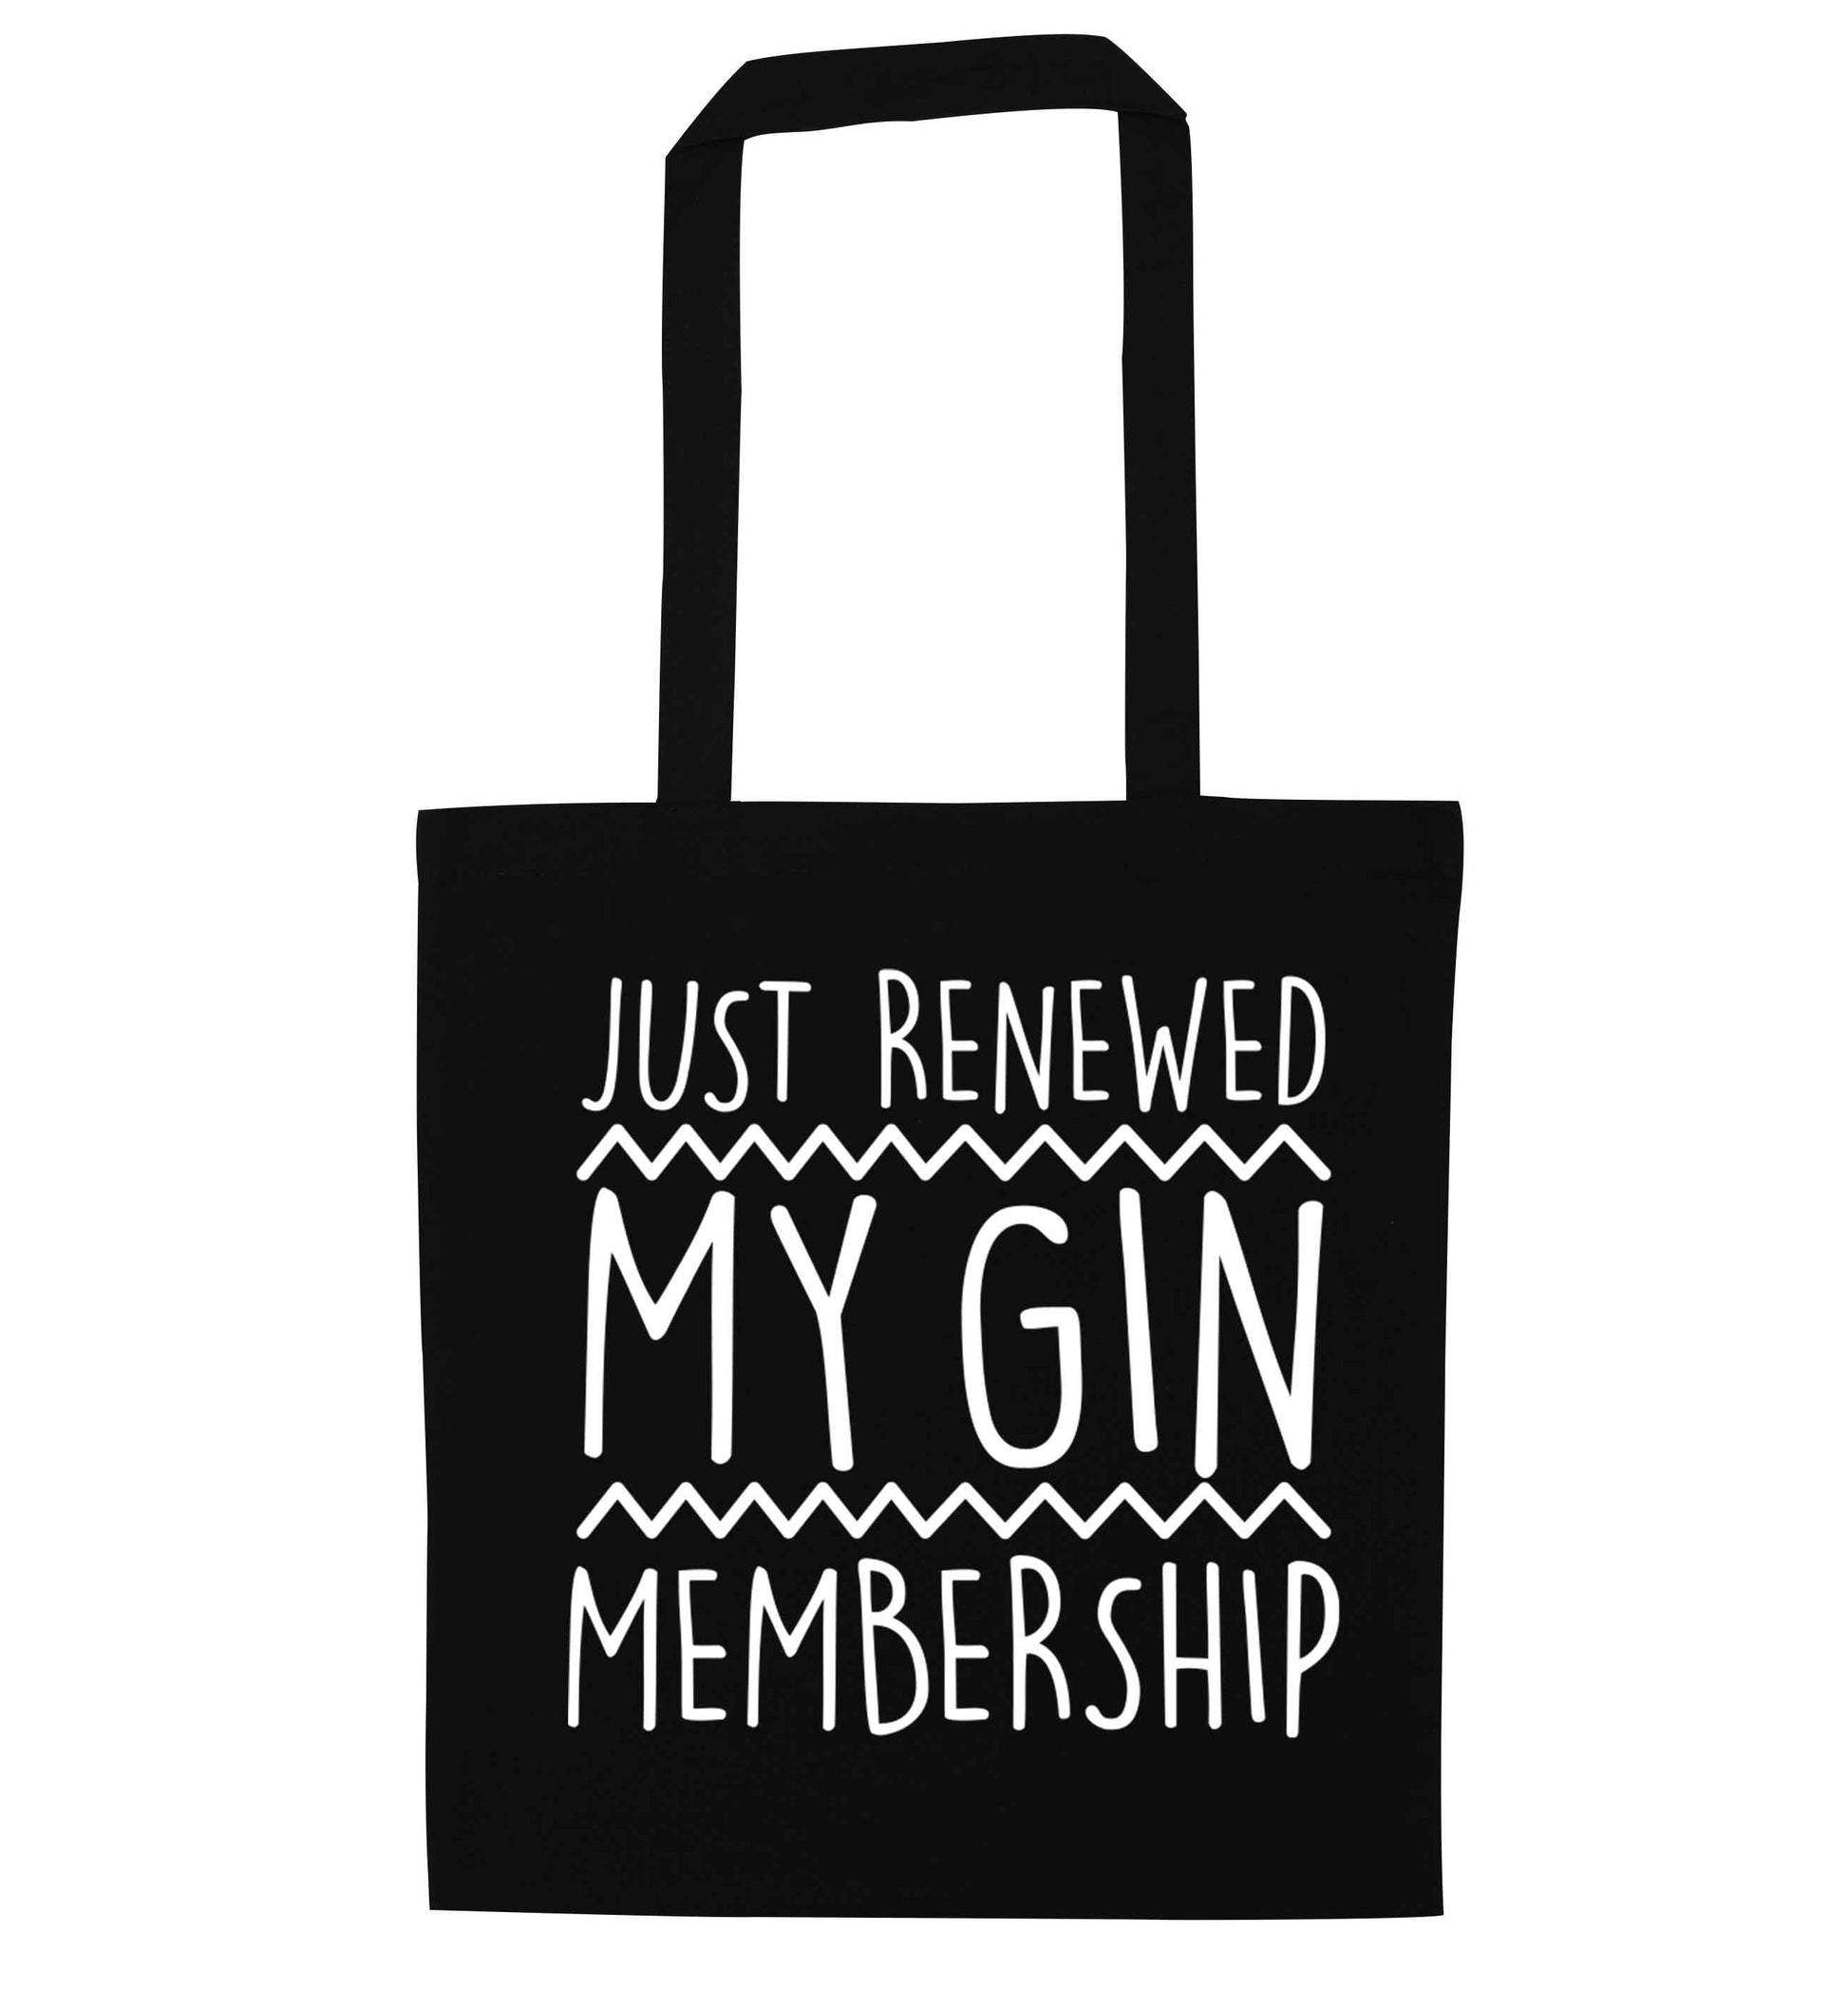 Just renewed my gin membership black tote bag